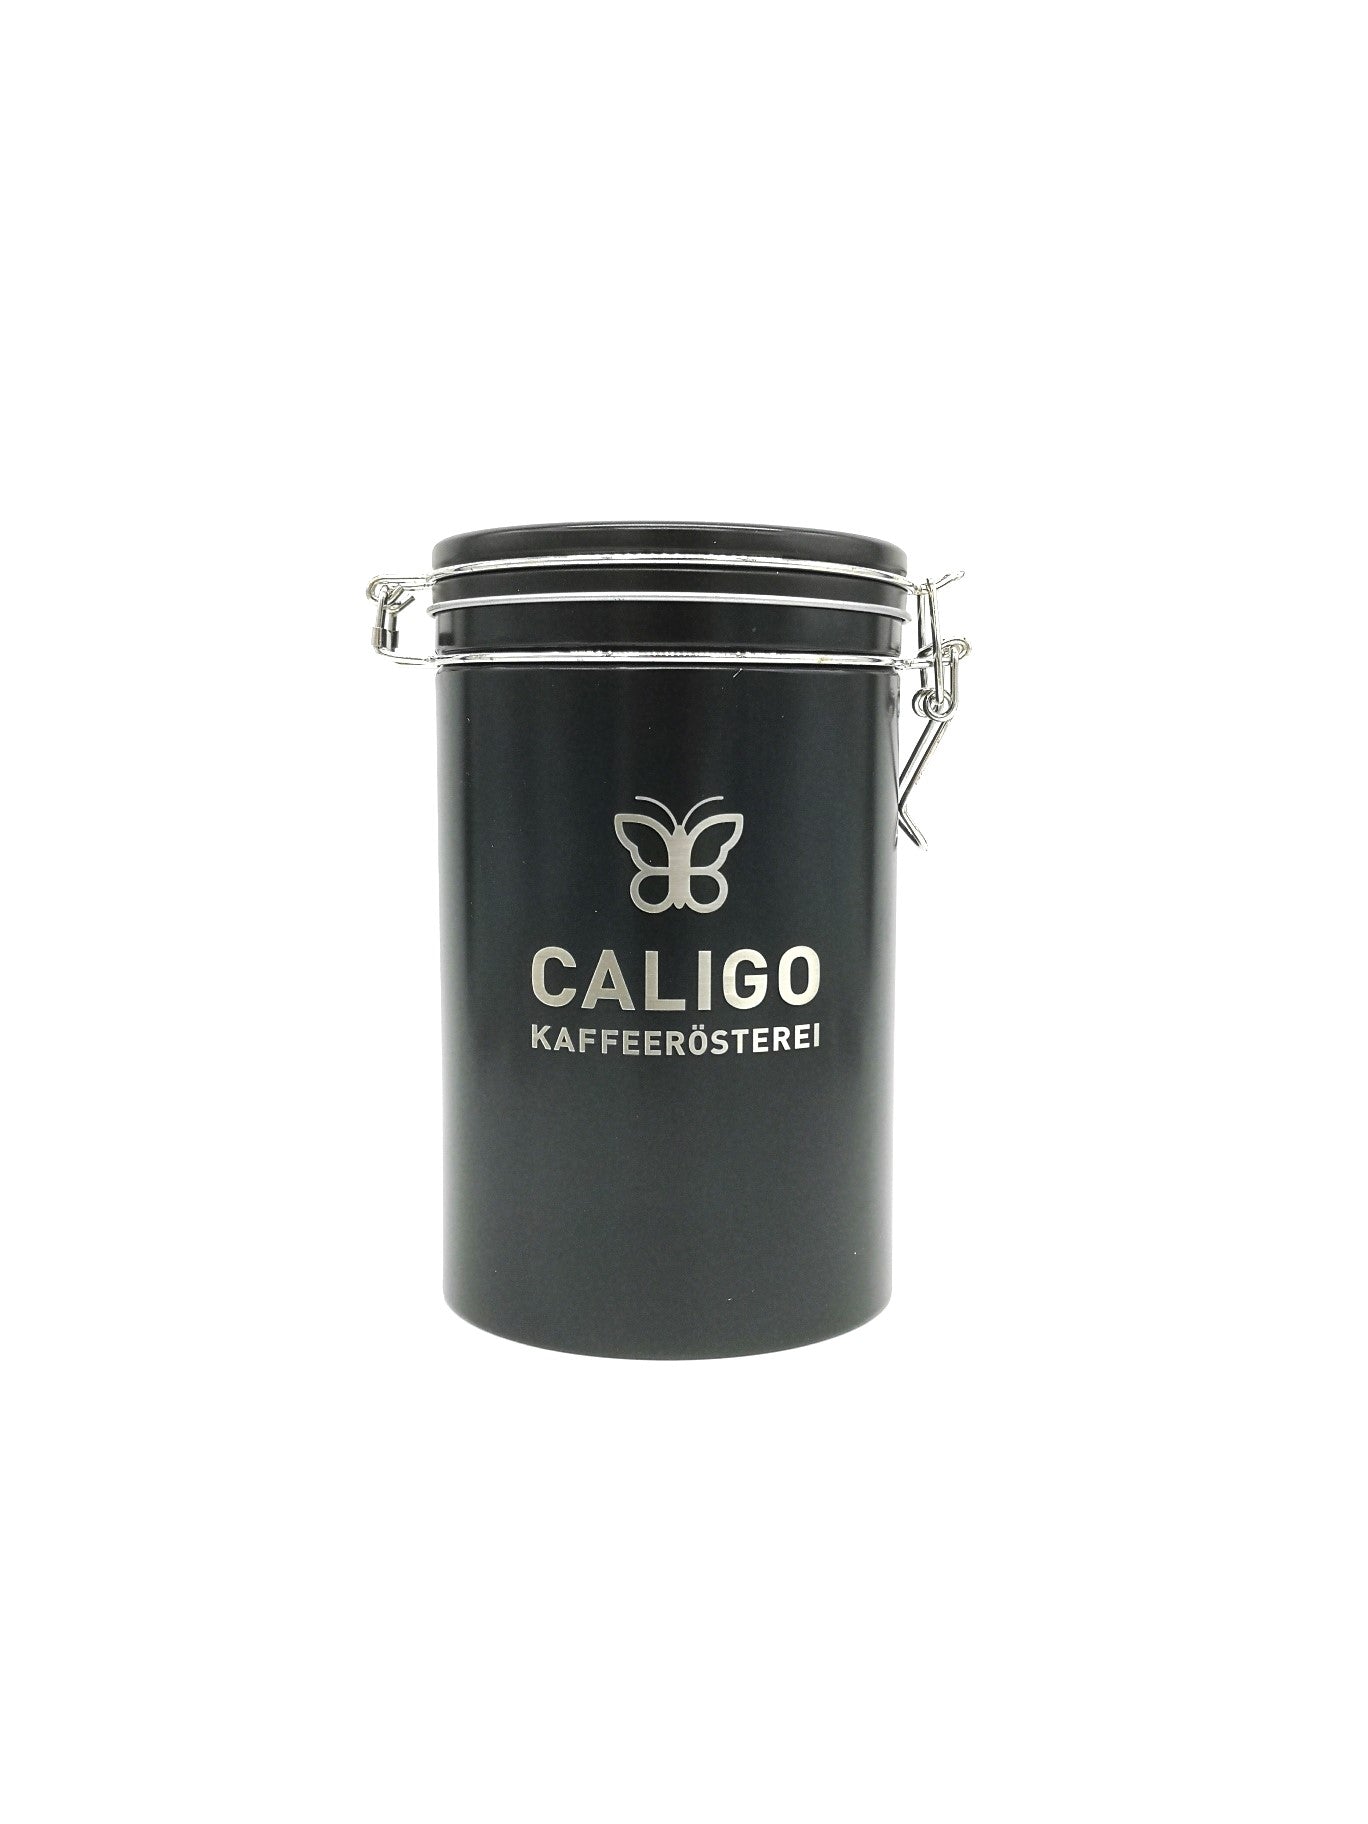 Caligo Kaffeerösterei, Kaffeedose schwarz mit Aromaverschluss und Caligo Logo Gravur silber